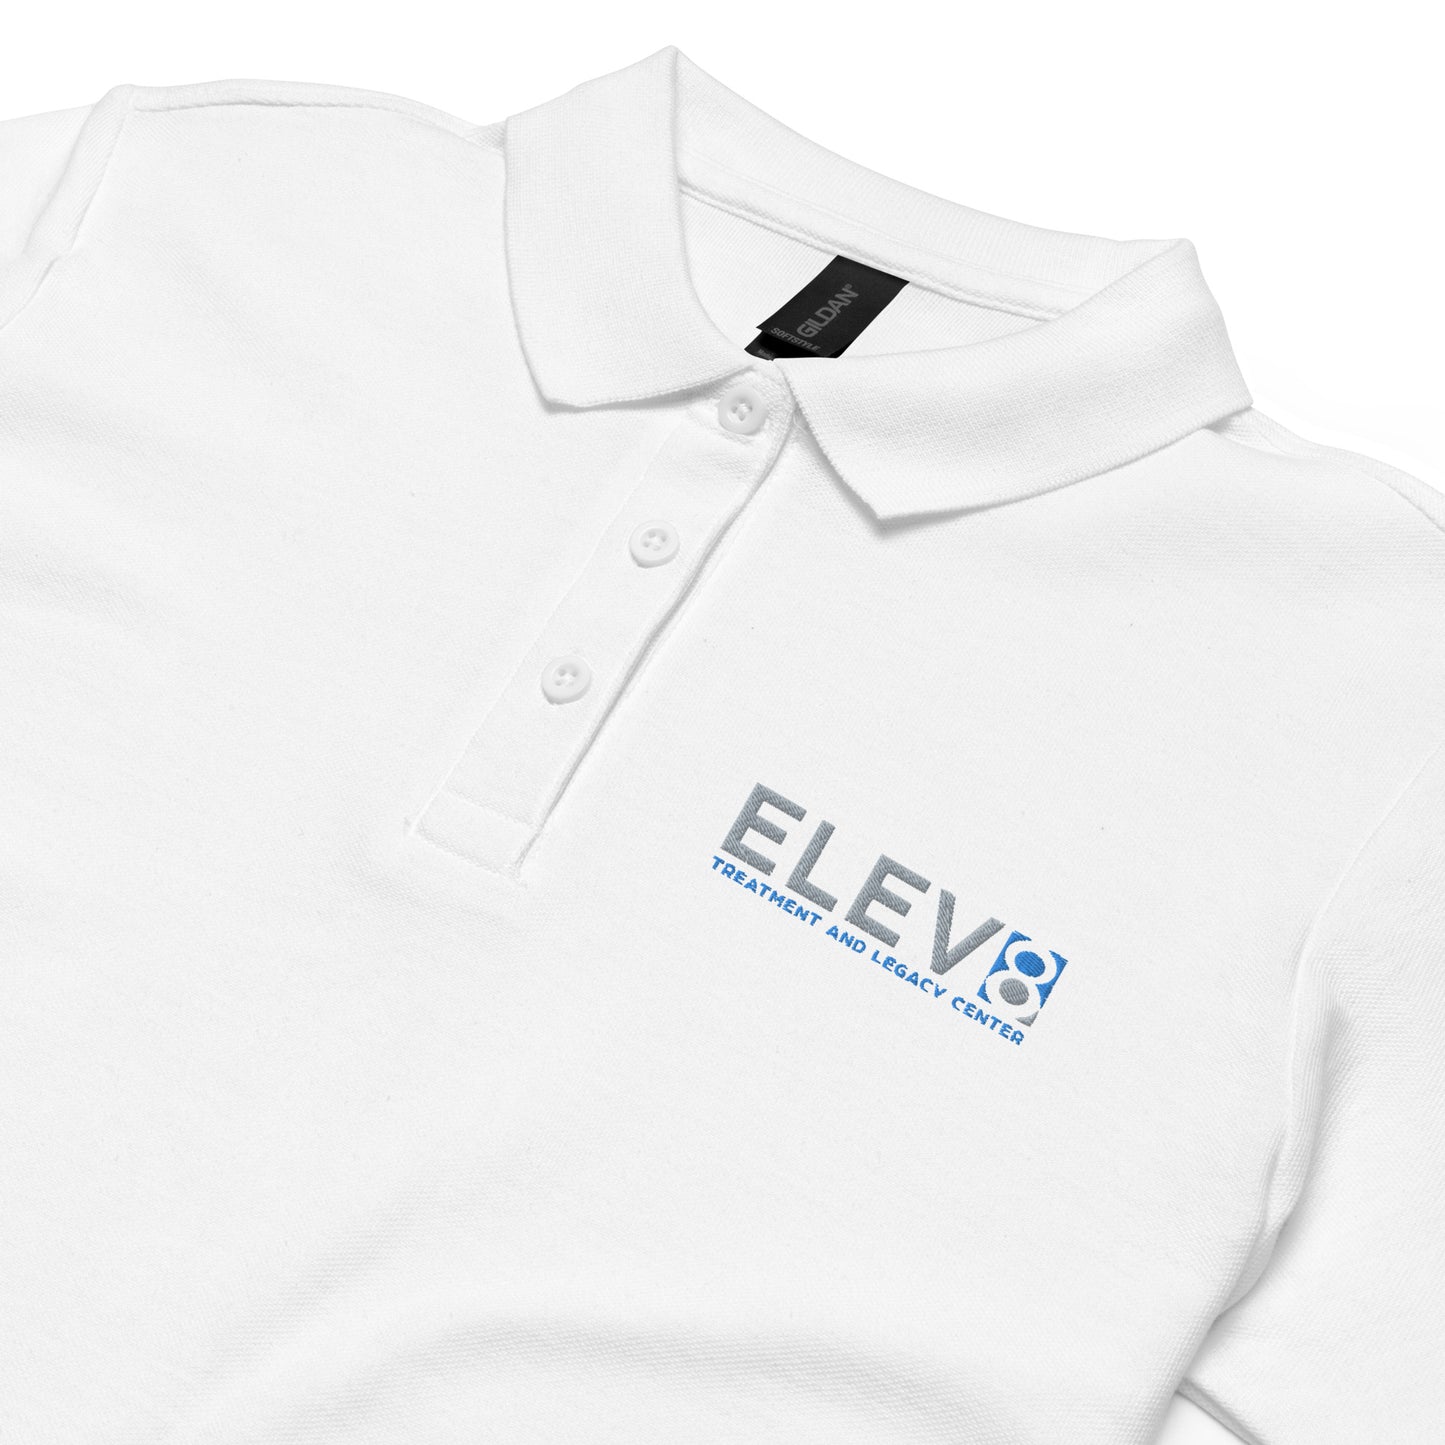 Elev8 Women’s pique polo shirt